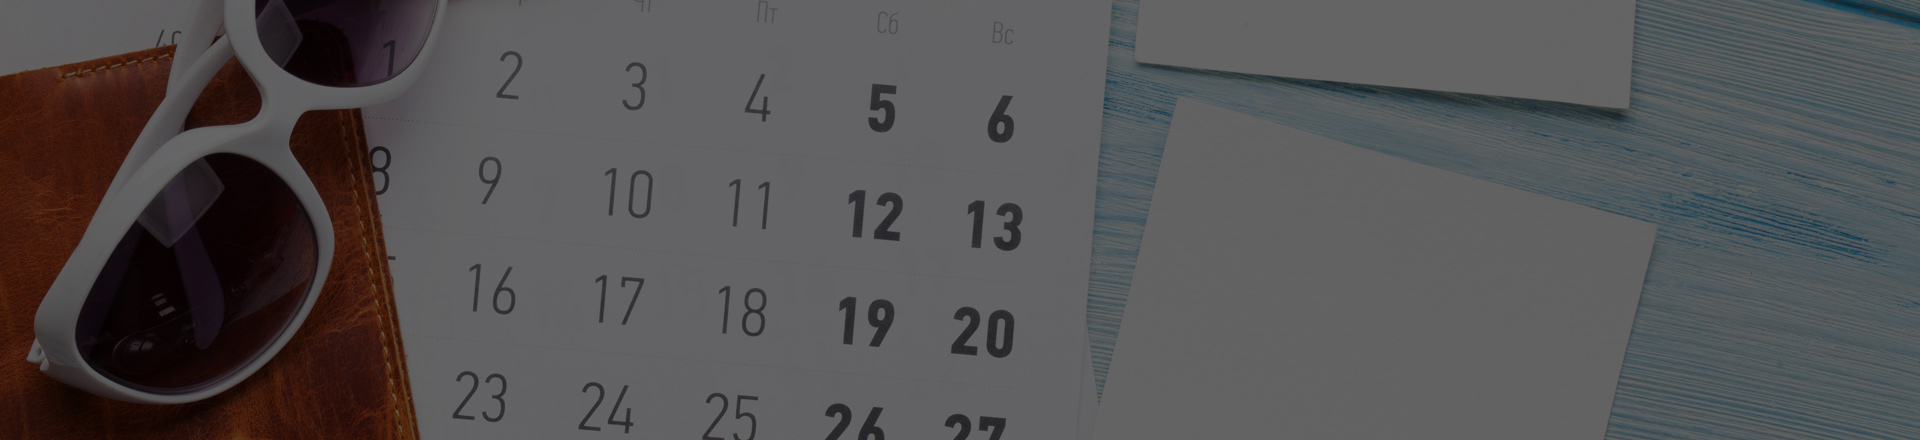 Солнечный календарь бухгалтера на июль